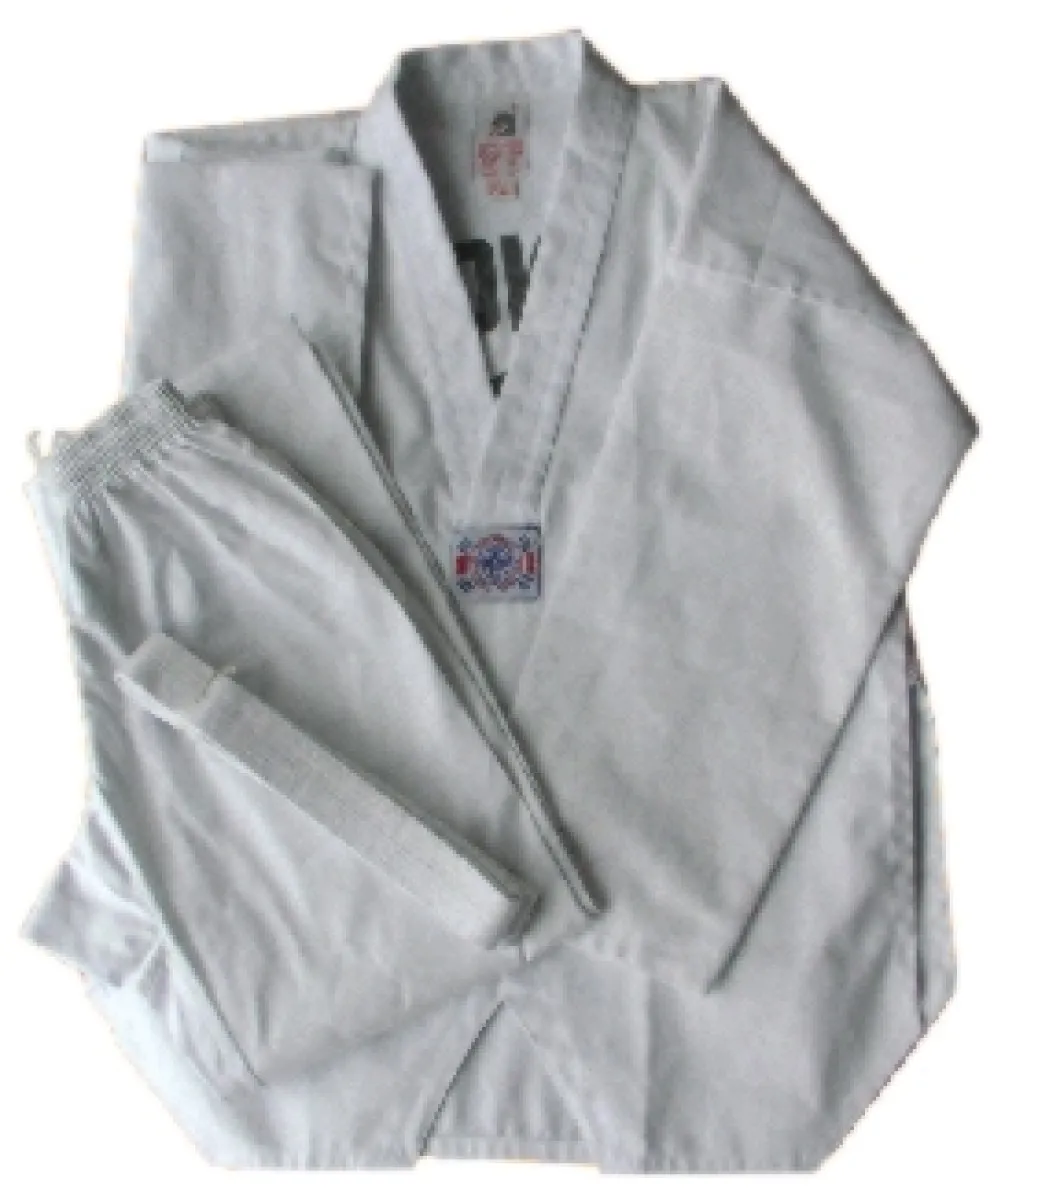 Taekwondo suit Basic